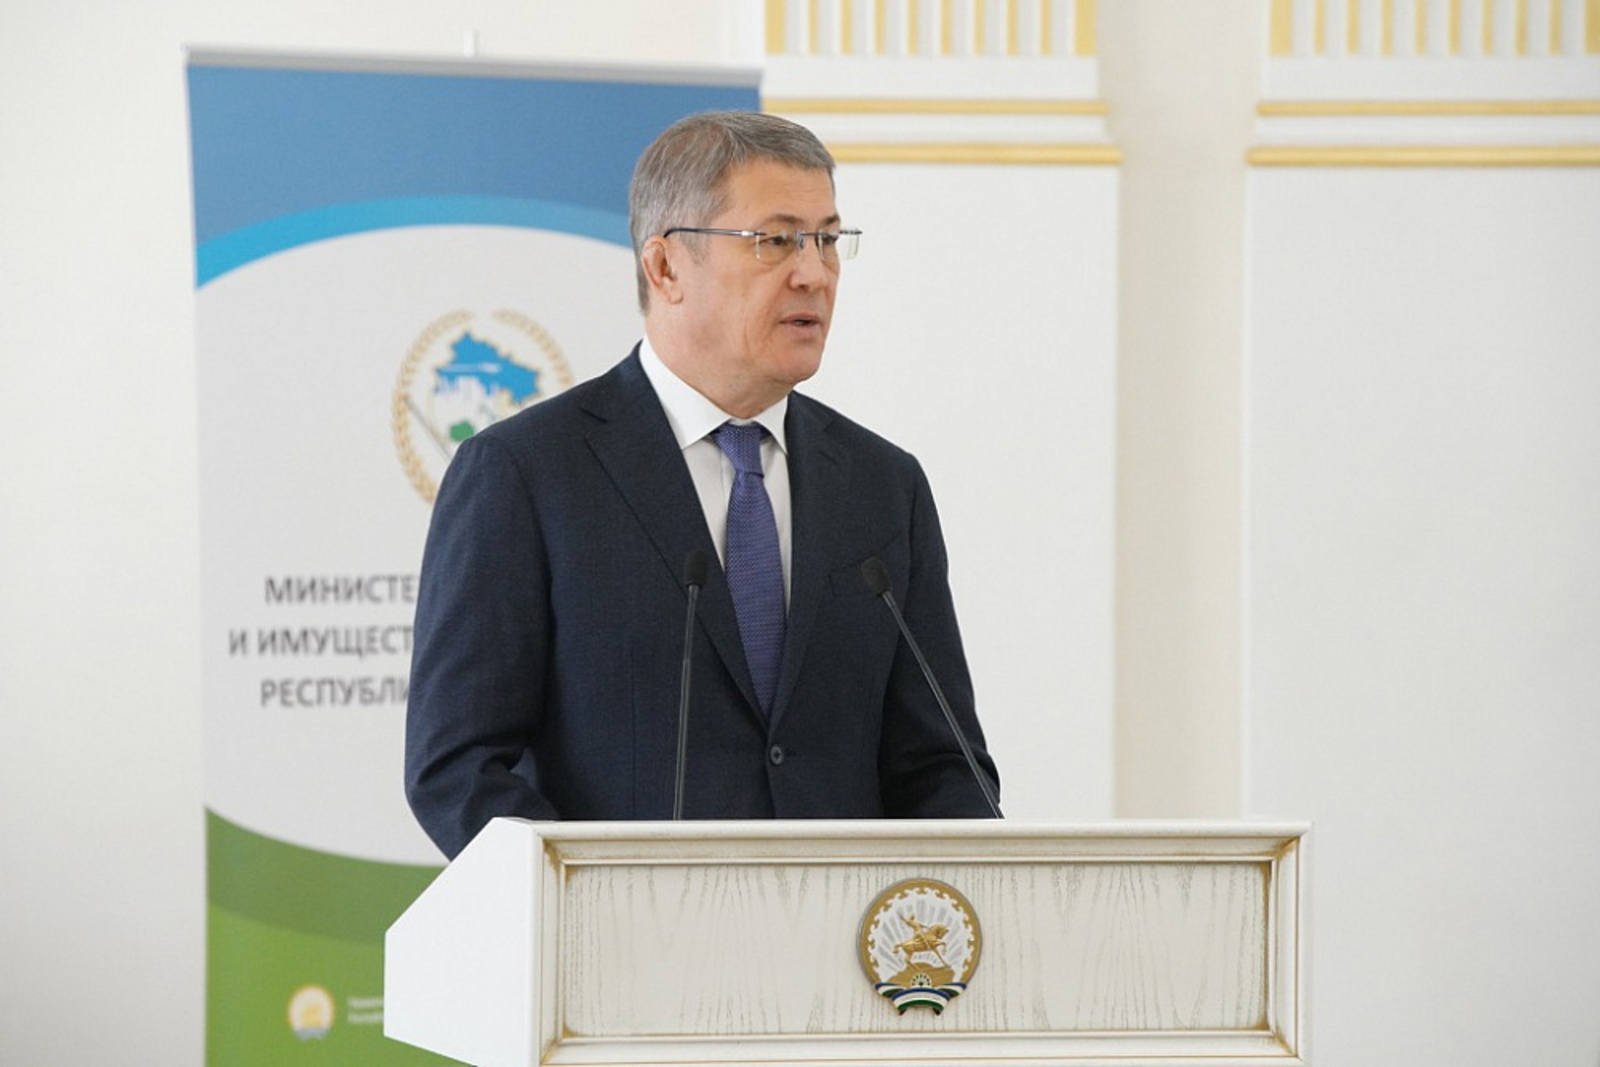 Радий Хабиров обозначил приоритеты эффективной земельной политики Башкортостана